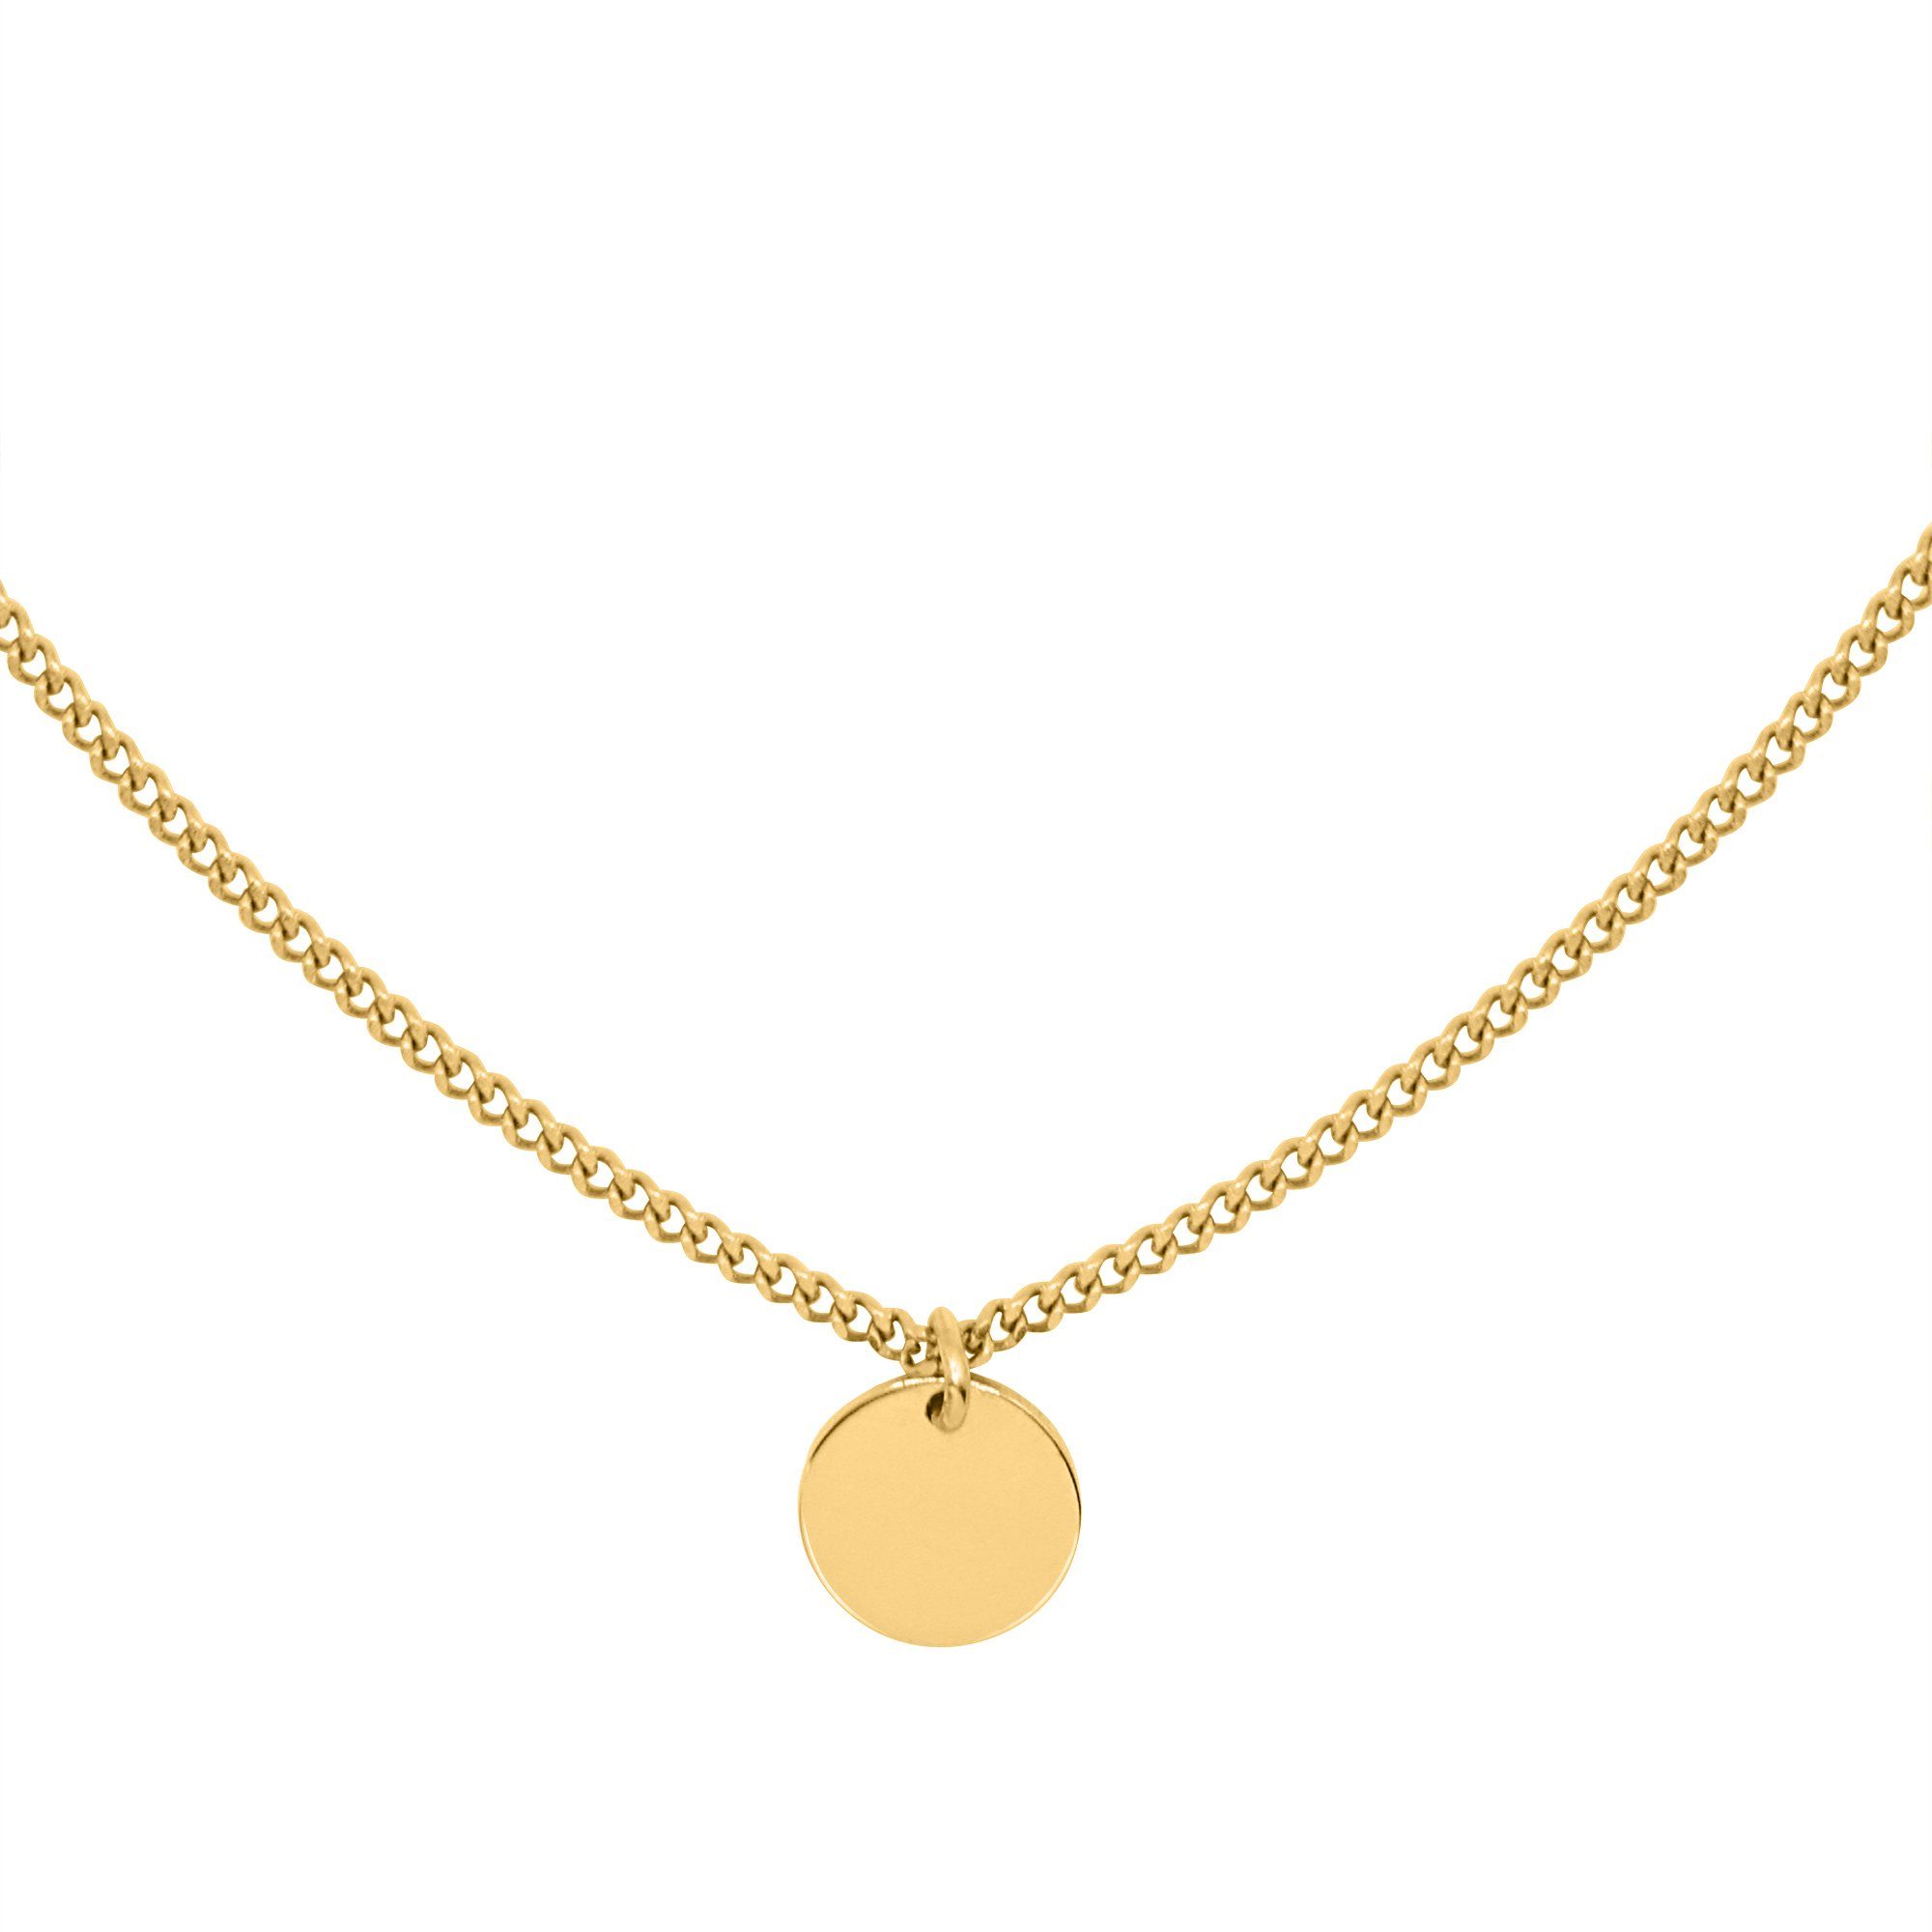 Collier (inkl. kleinen Geschenkverpackung), Heideman goldfarben mit Amory Perlen Halskette Damen